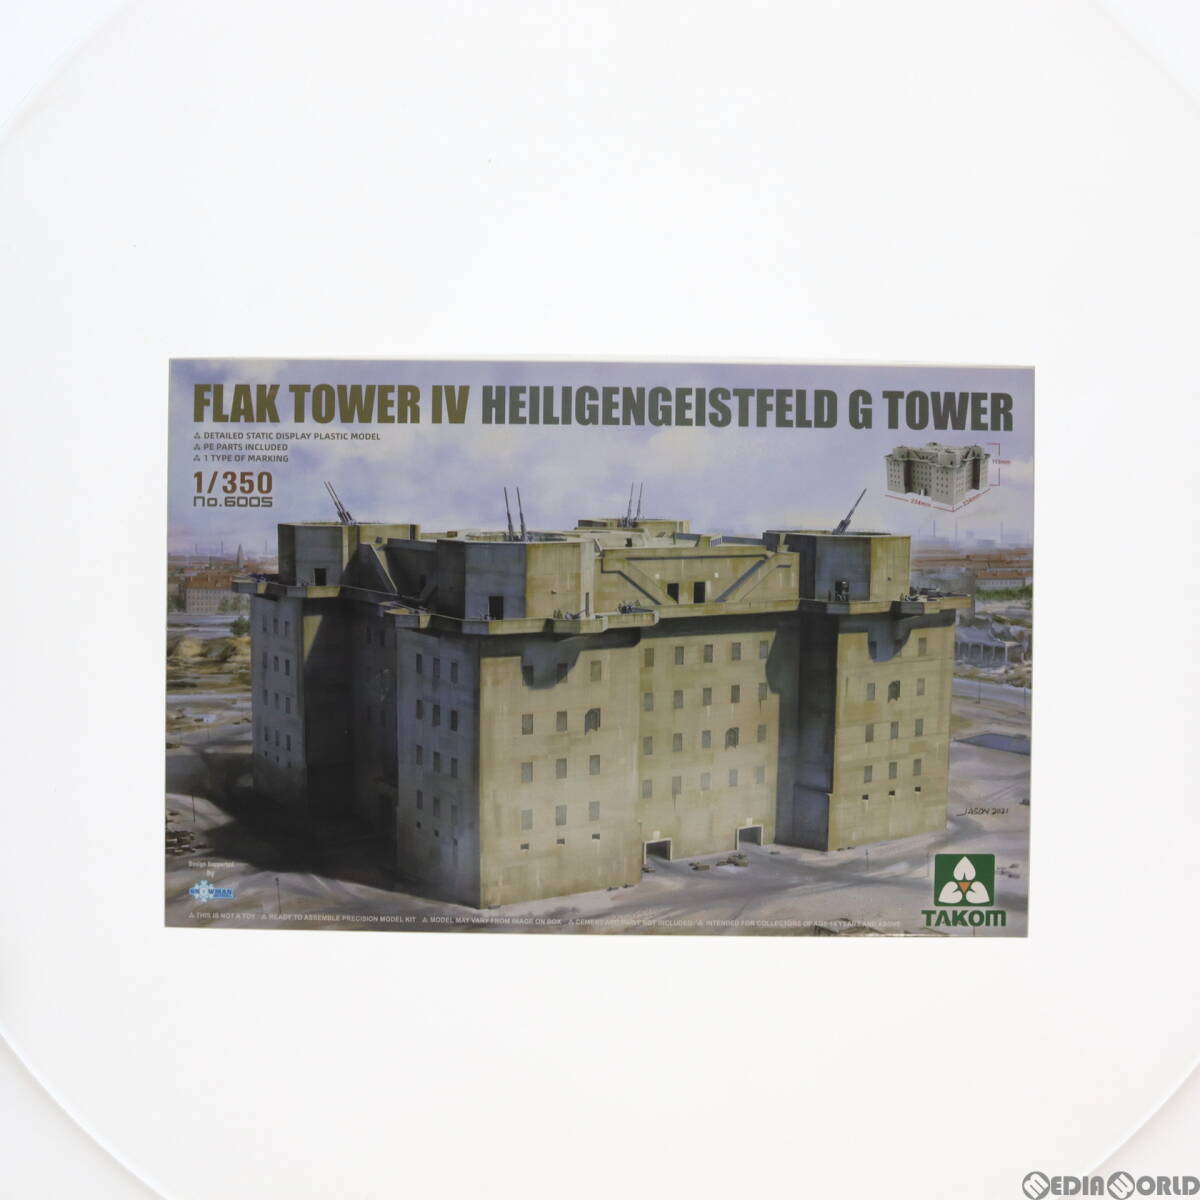 【中古】[PTM]1/350 ドイツ フラックタワー IV ハイリゲンガイストフェルト高射砲塔(G塔) プラモデル(TKO6005) TAKOM(タコム)(63040064)の画像1